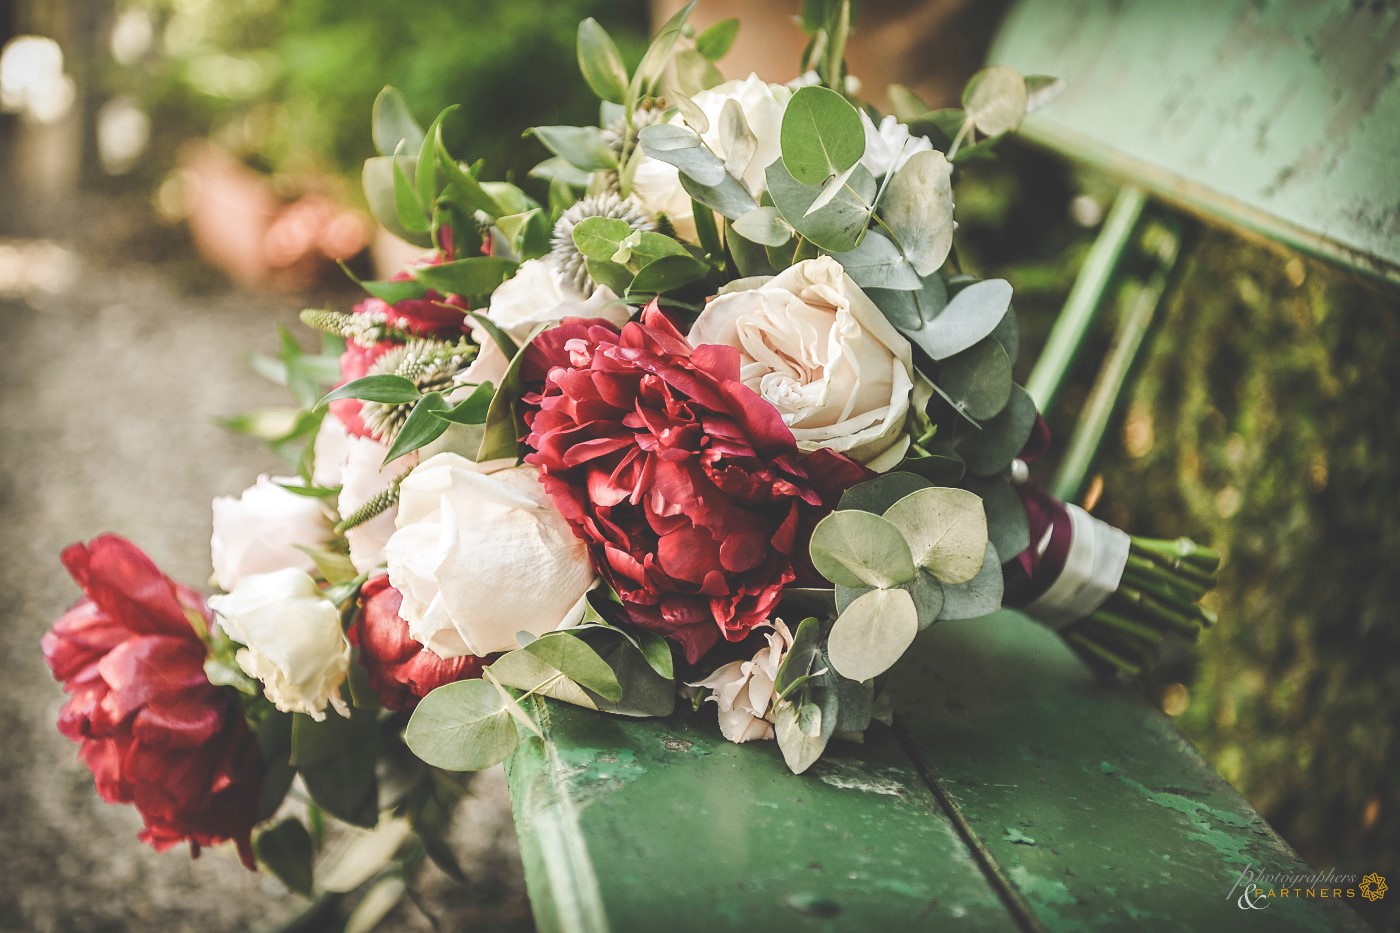 The bride's bouquet.